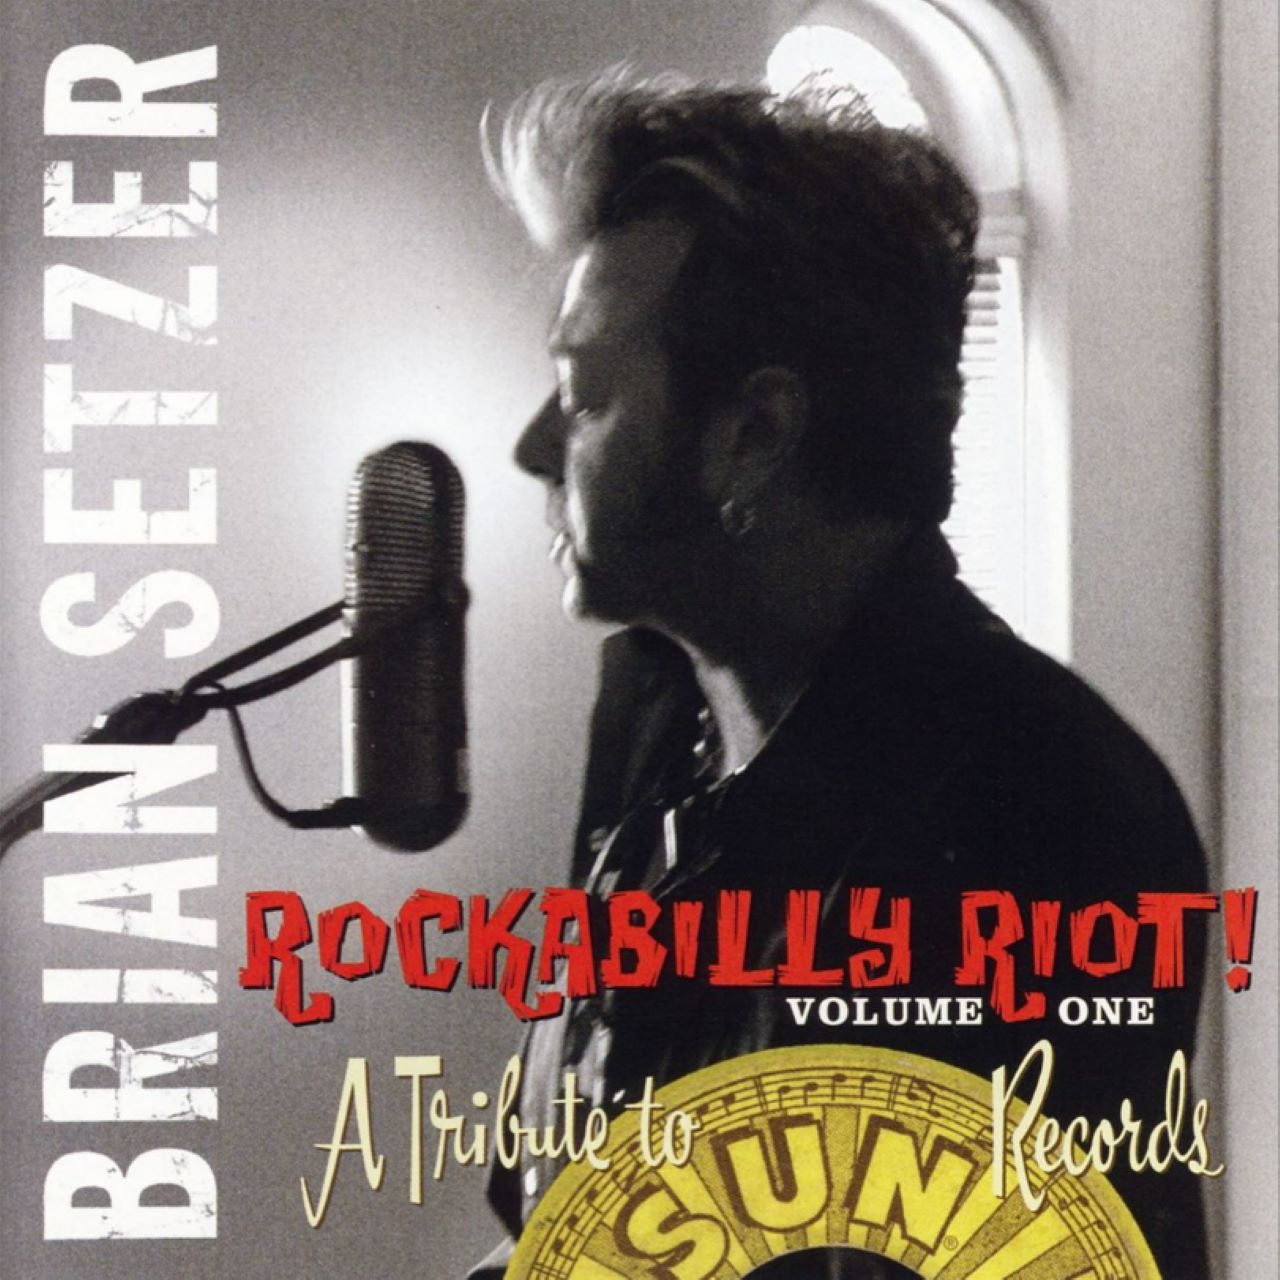 Brian Setzer – Rockabilly Riot Volume 1 cover album